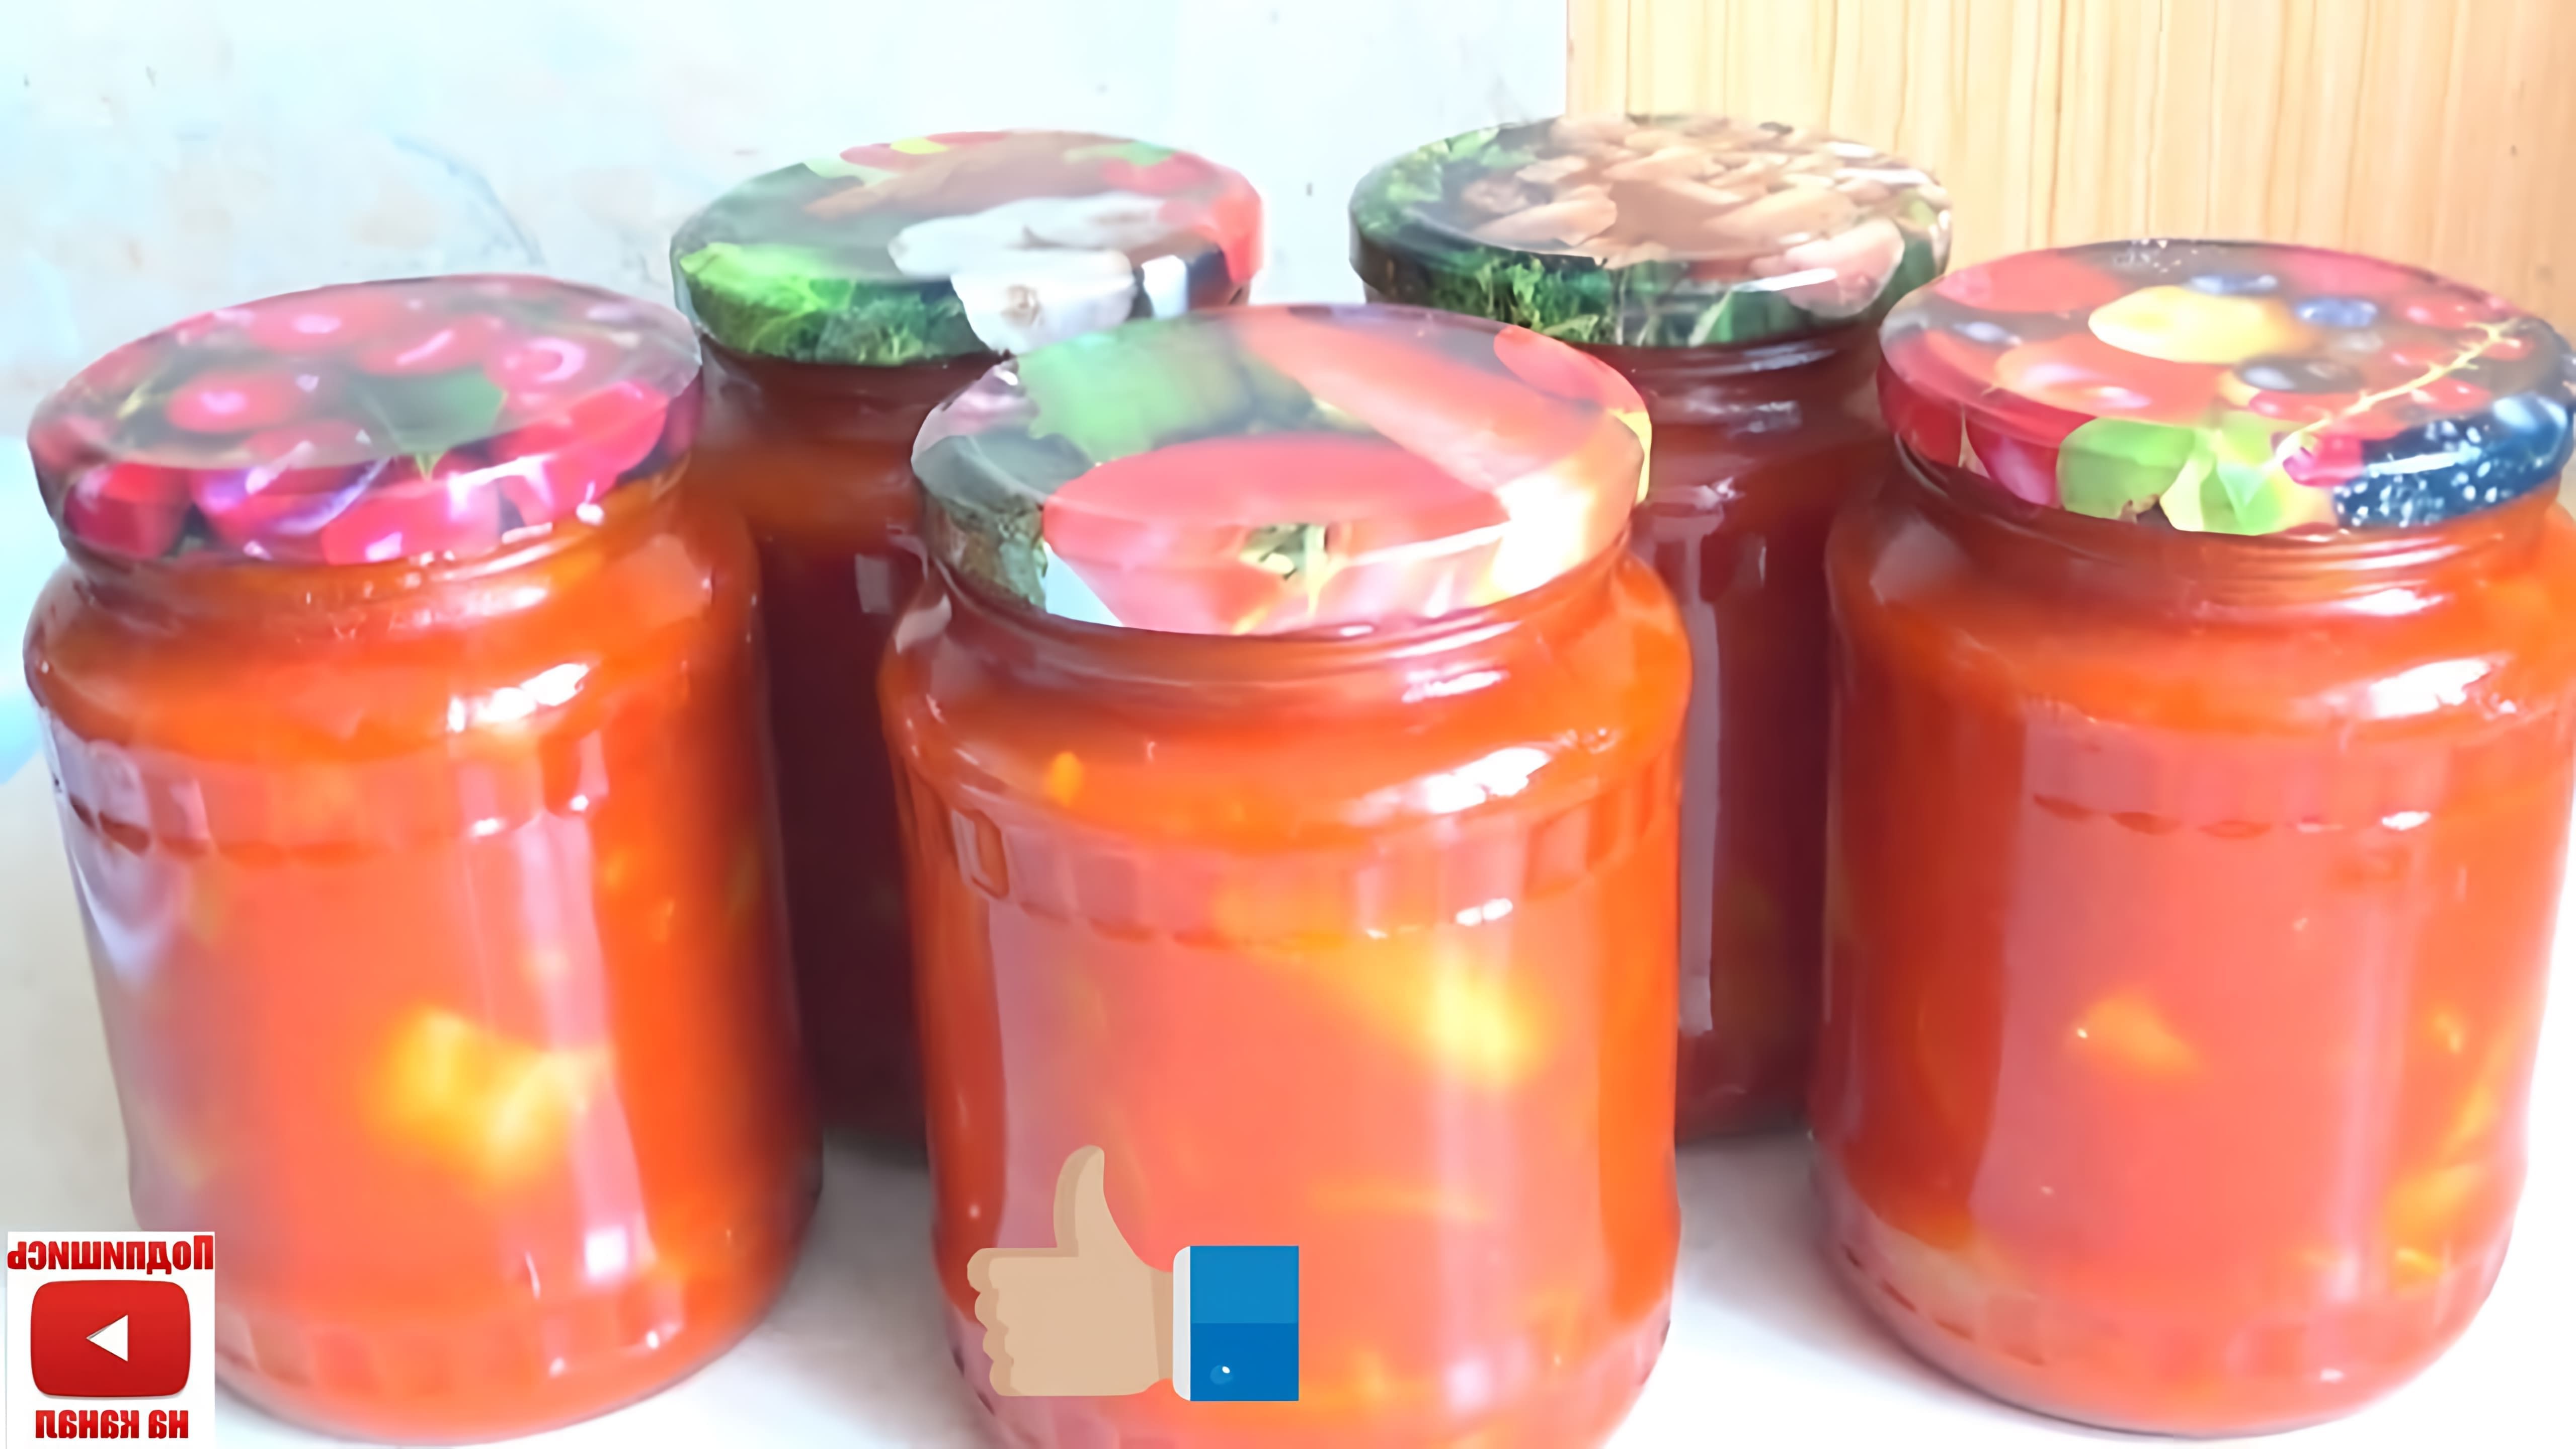 В этом видео демонстрируется процесс приготовления быстрого и вкусного лечо на зиму без использования помидор